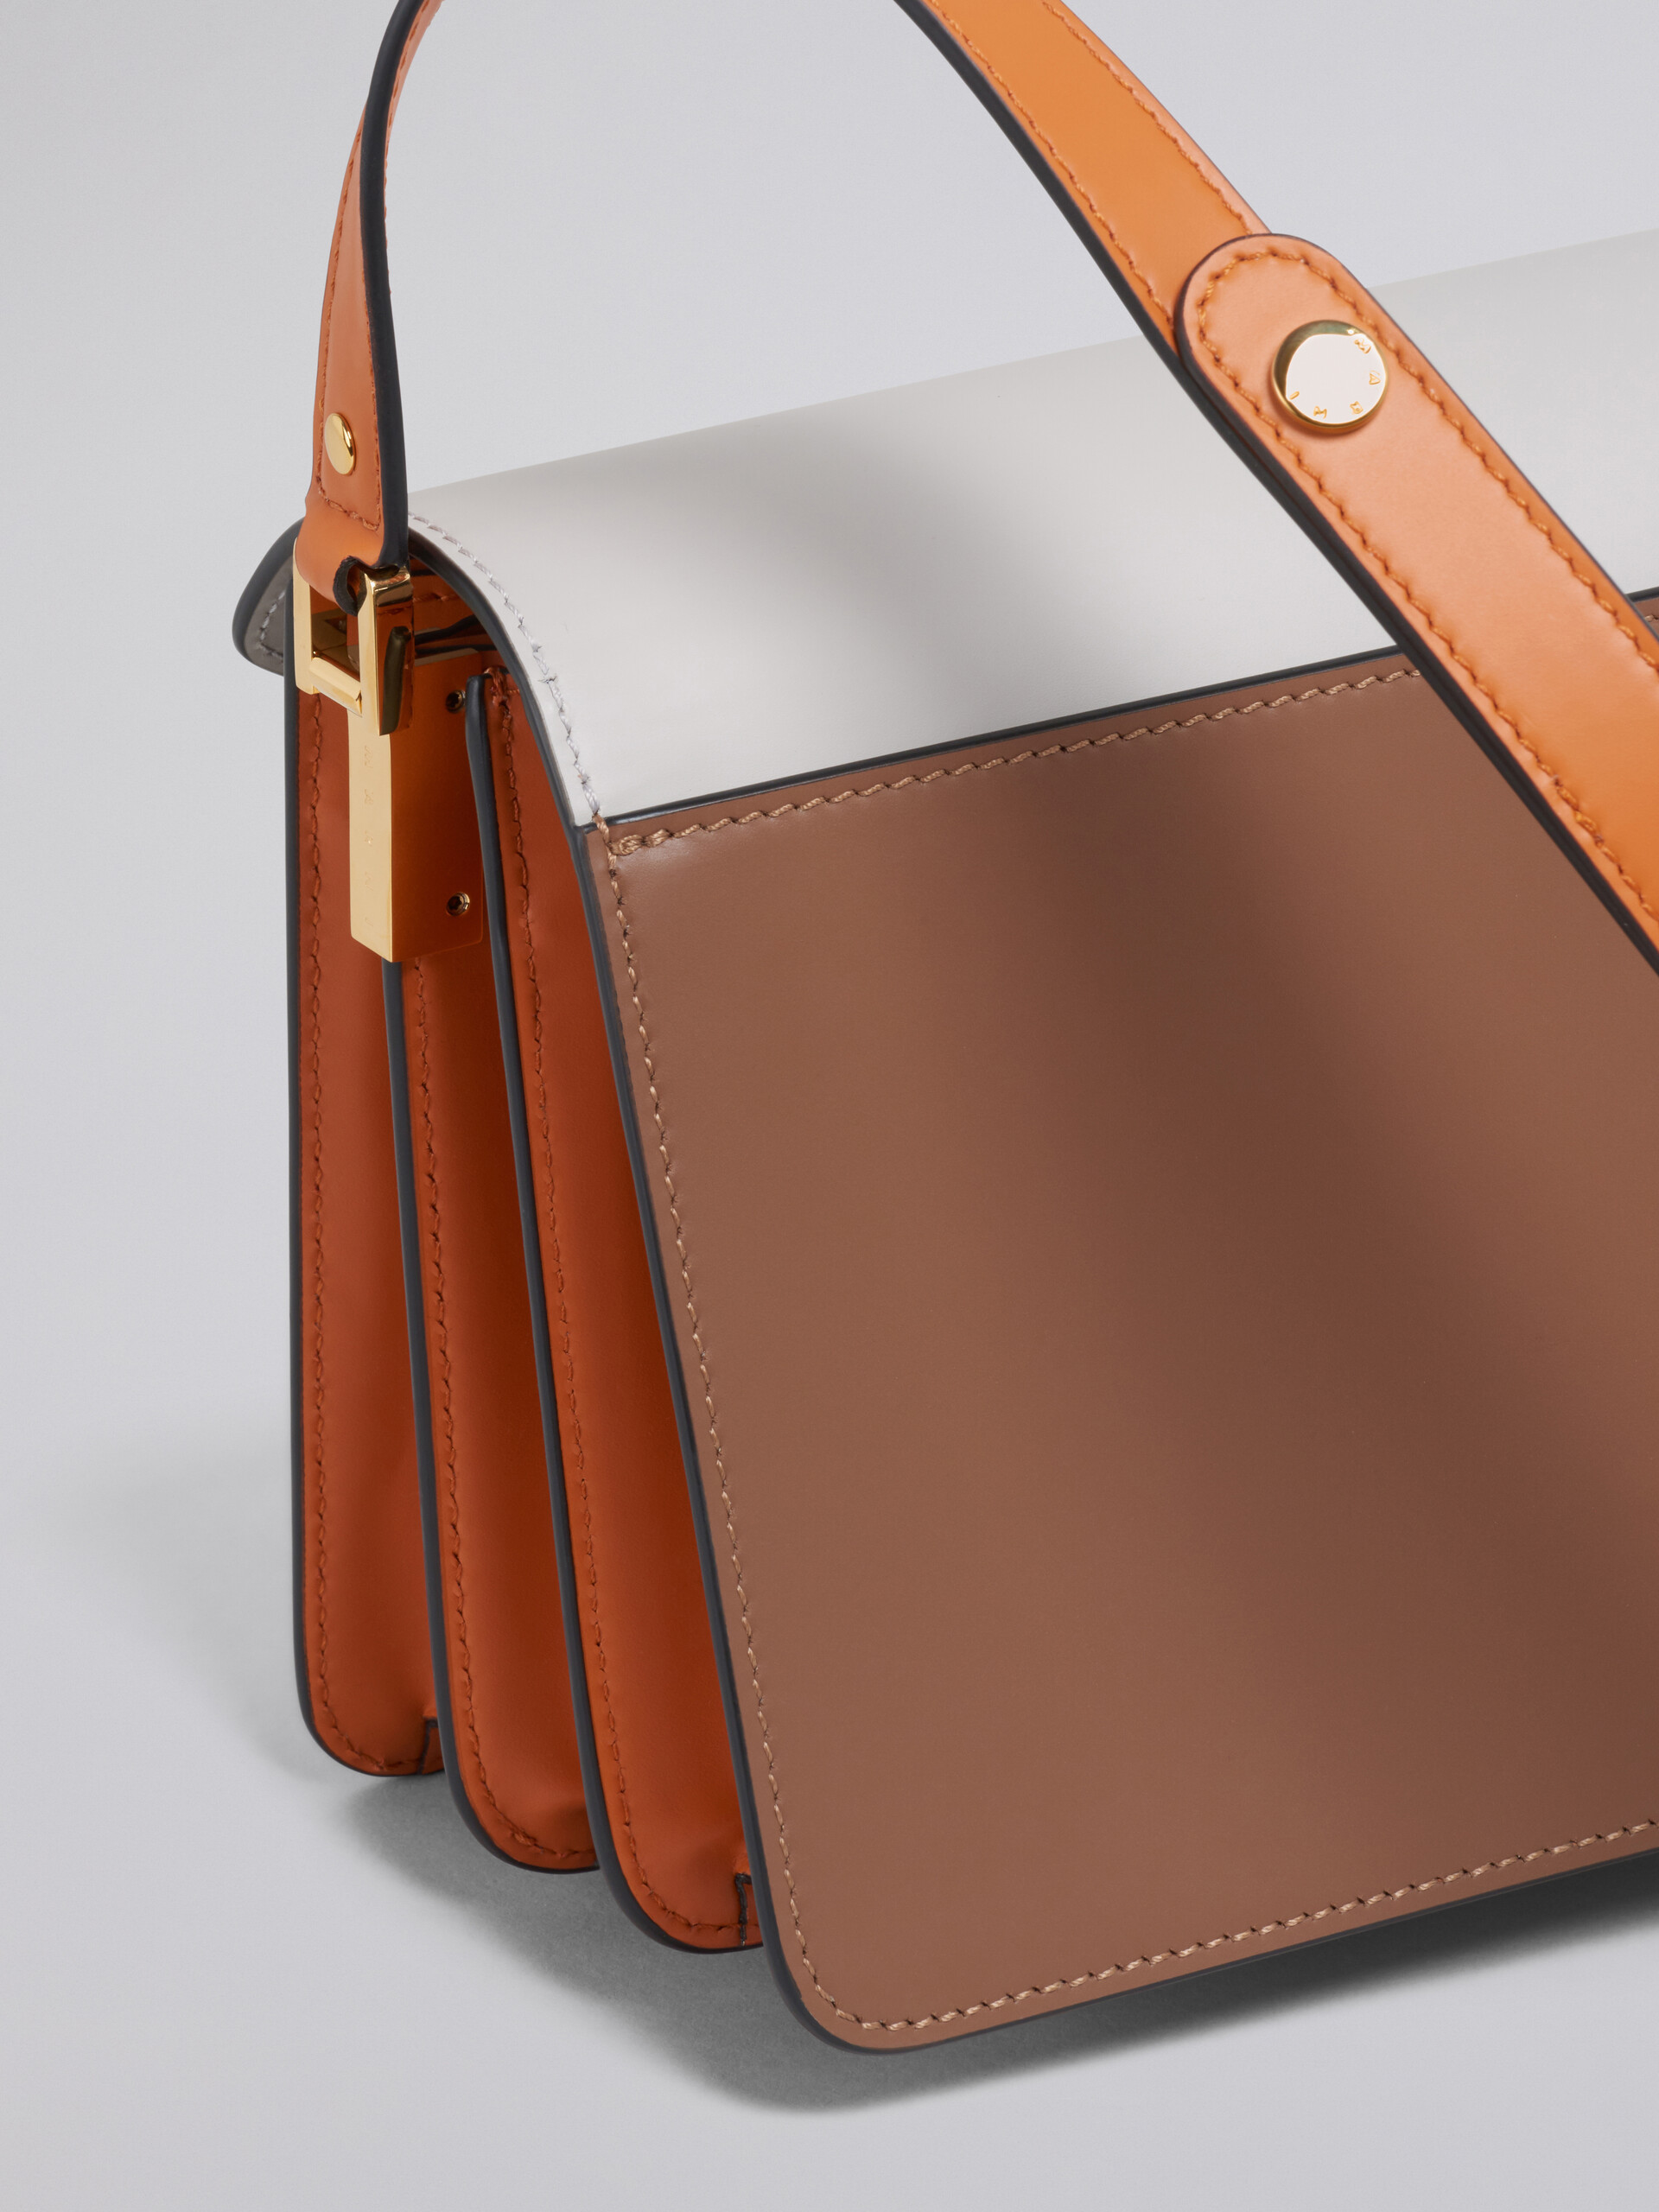 TRUNK Bag aus glattem Kalbsleder in Weiß, Braun und Orange - Schultertaschen - Image 4